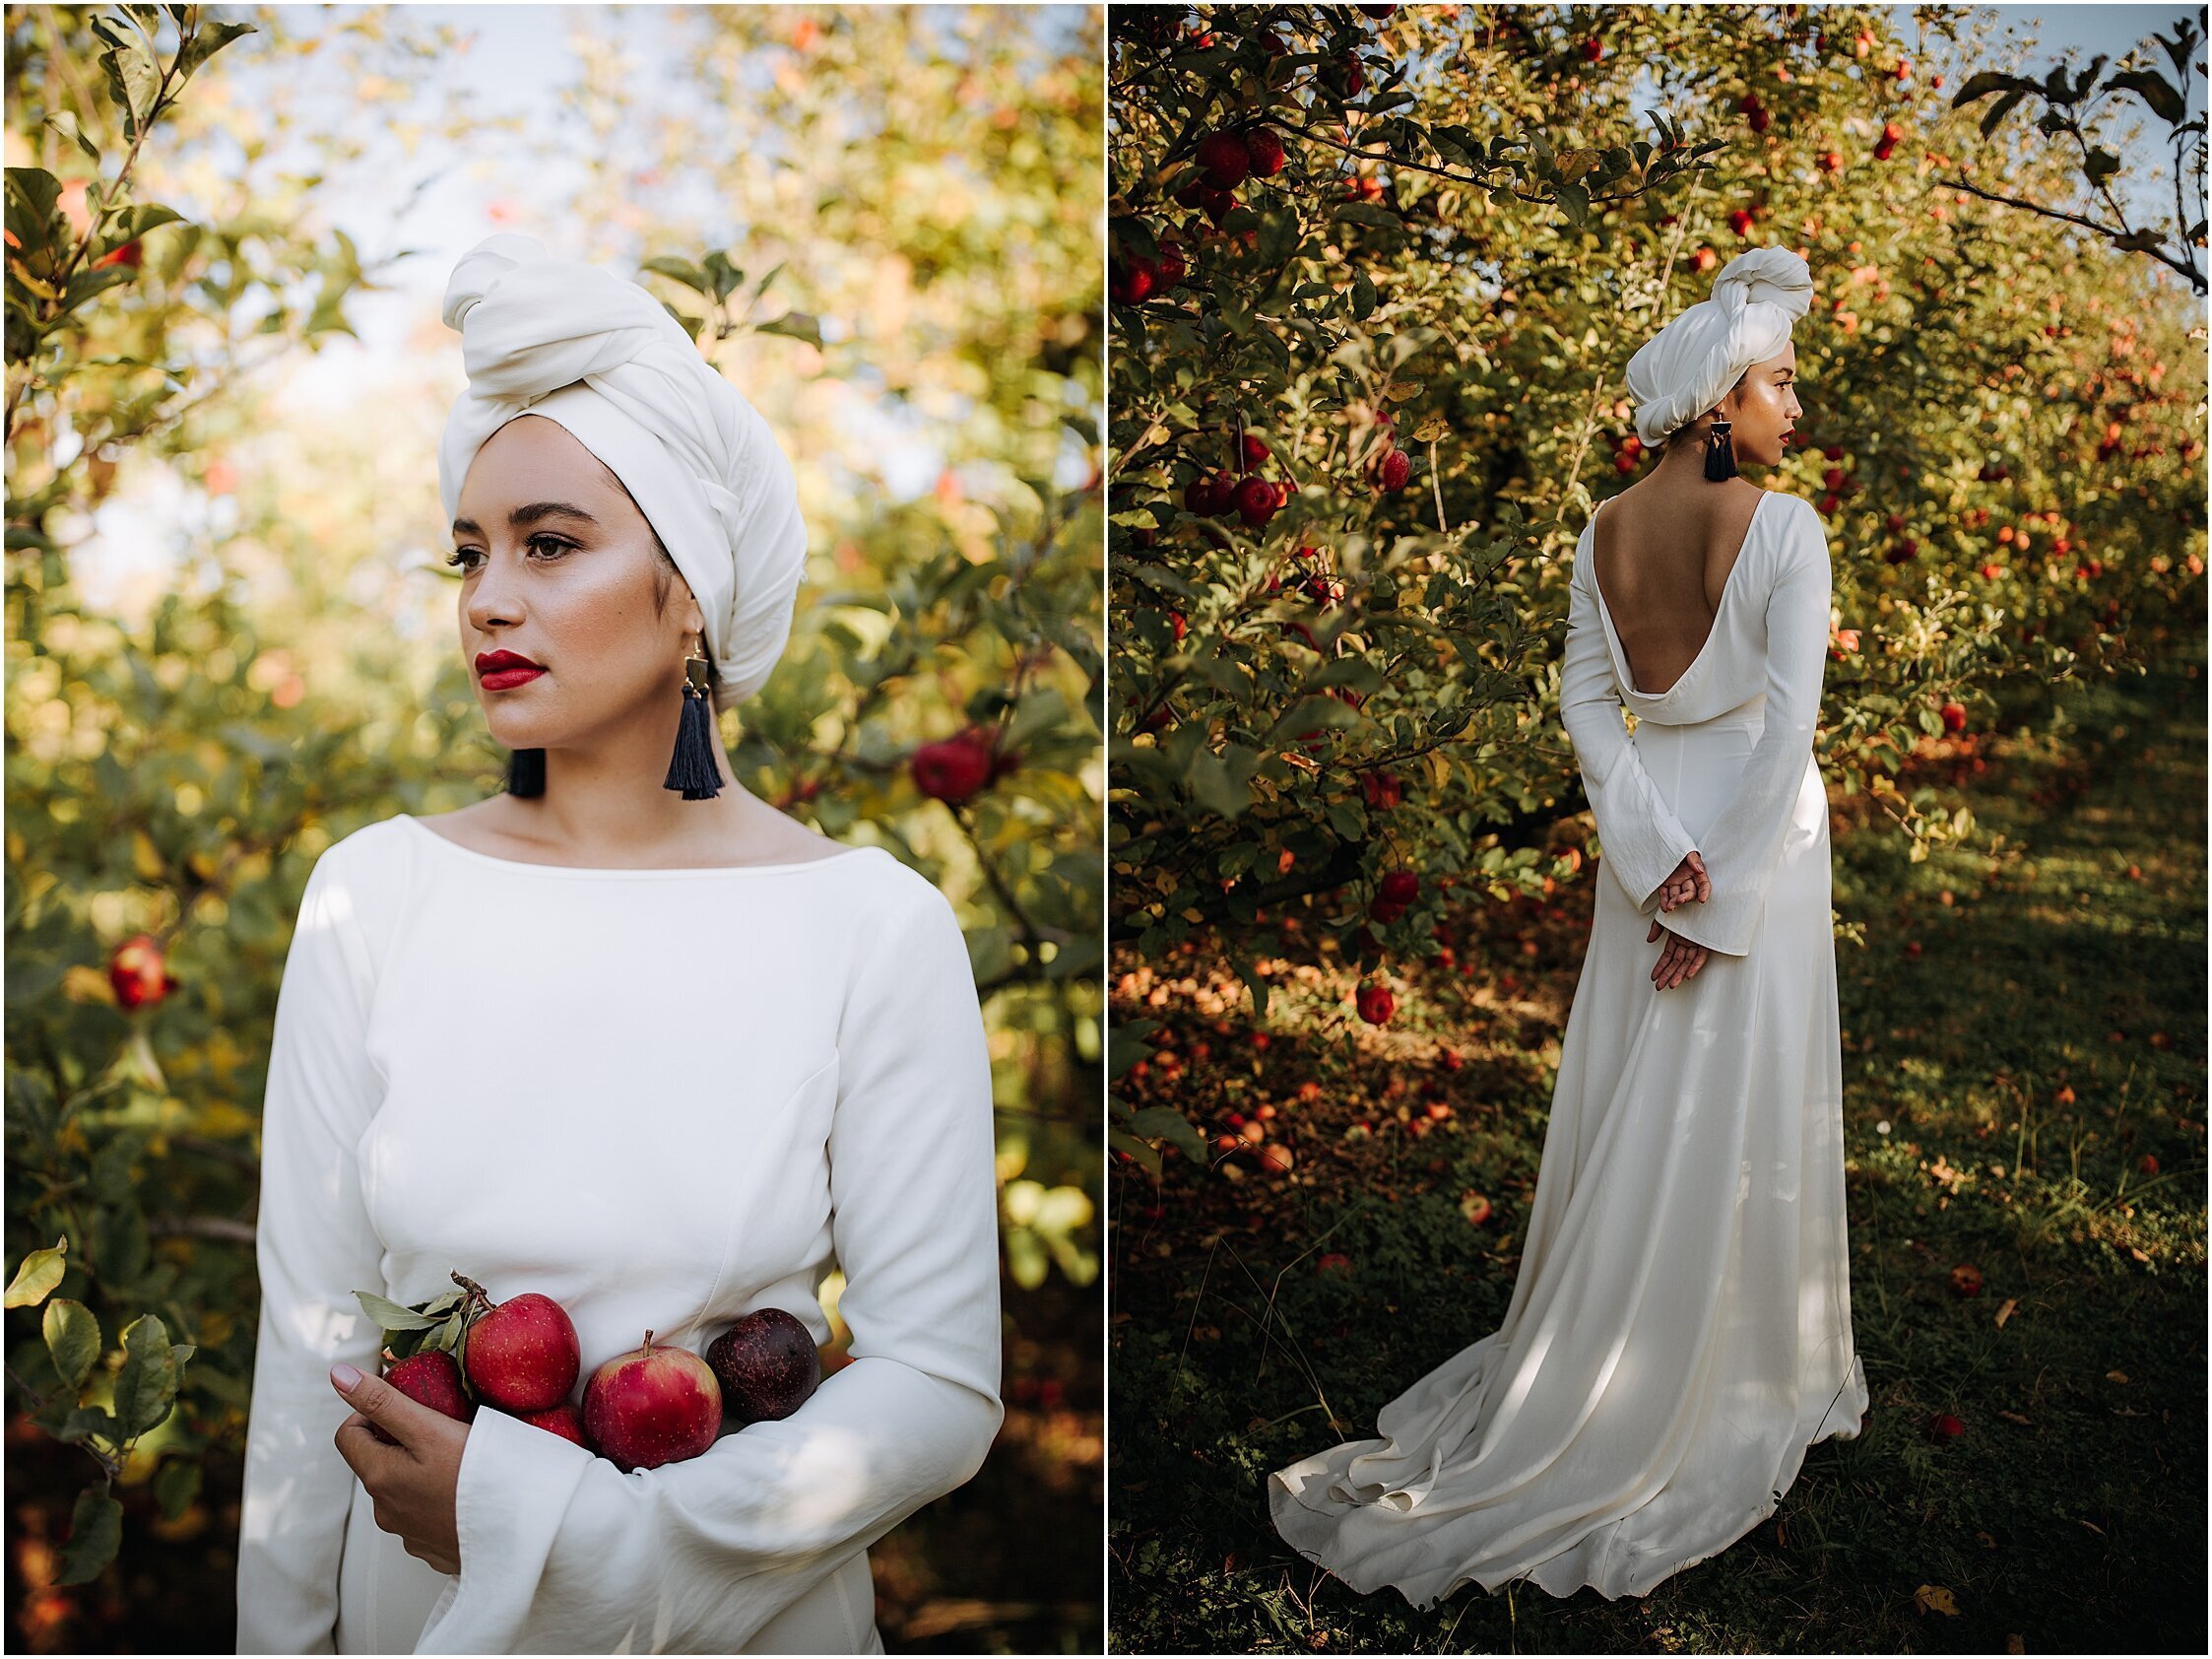 Zanda+Auckland+wedding+photographer+unique+portrait+photoshoot+ideas+autumn+winter+Windmill+apple+orchard+Coatesville+New+Zealand_10.jpeg